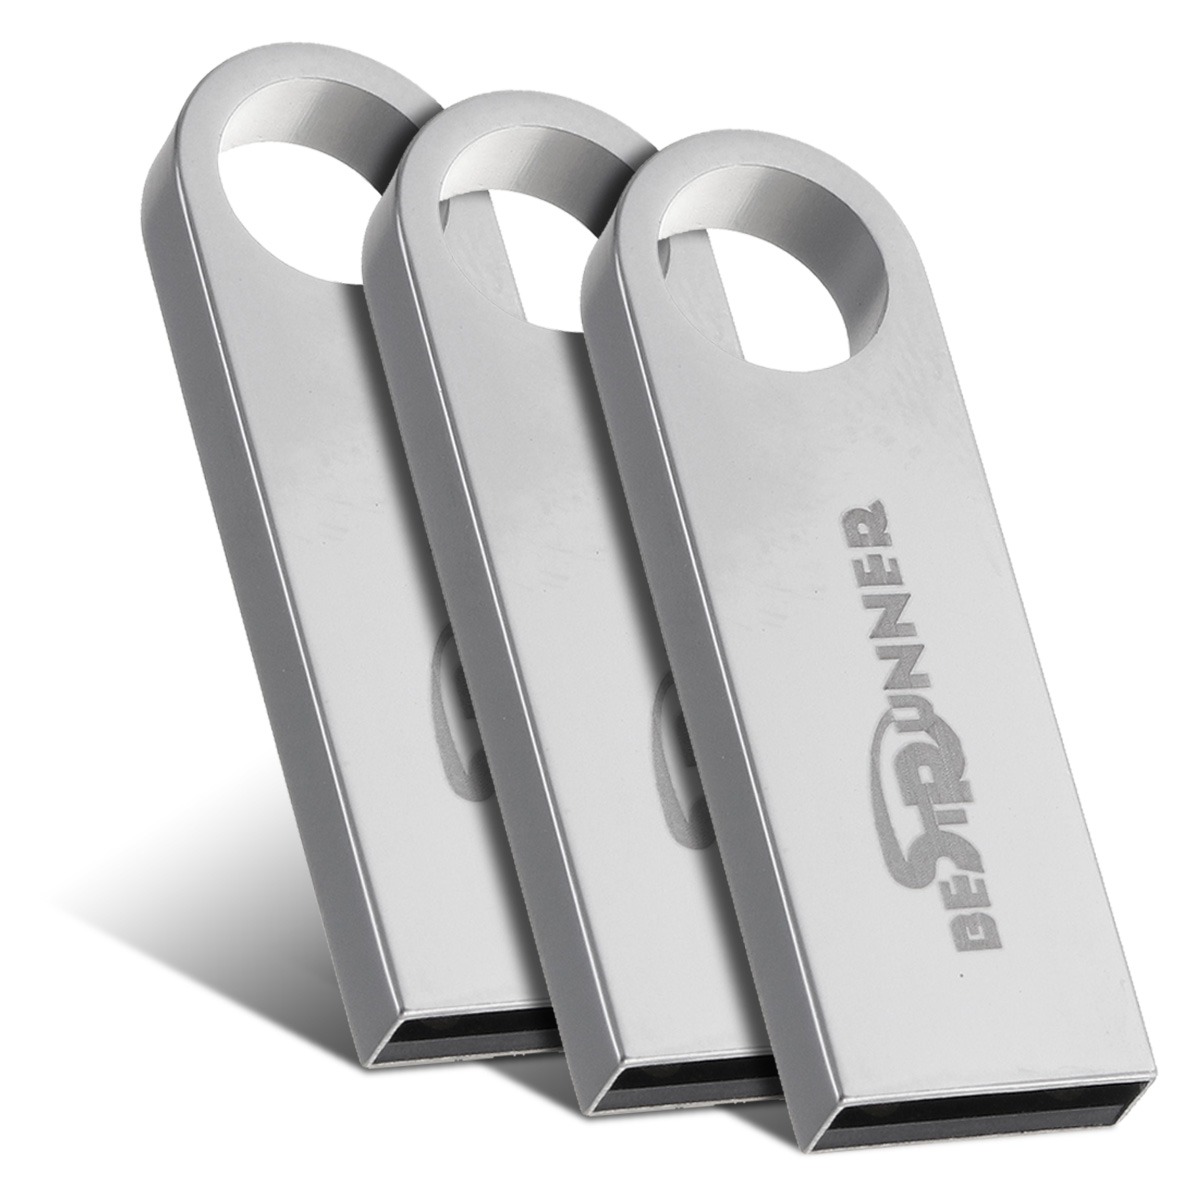 3264GB-USB-20-Flash-Drive-Metal-Flash-Memory-Card-USB-Stick-Pen-Drive-U-Disk-1714615-4